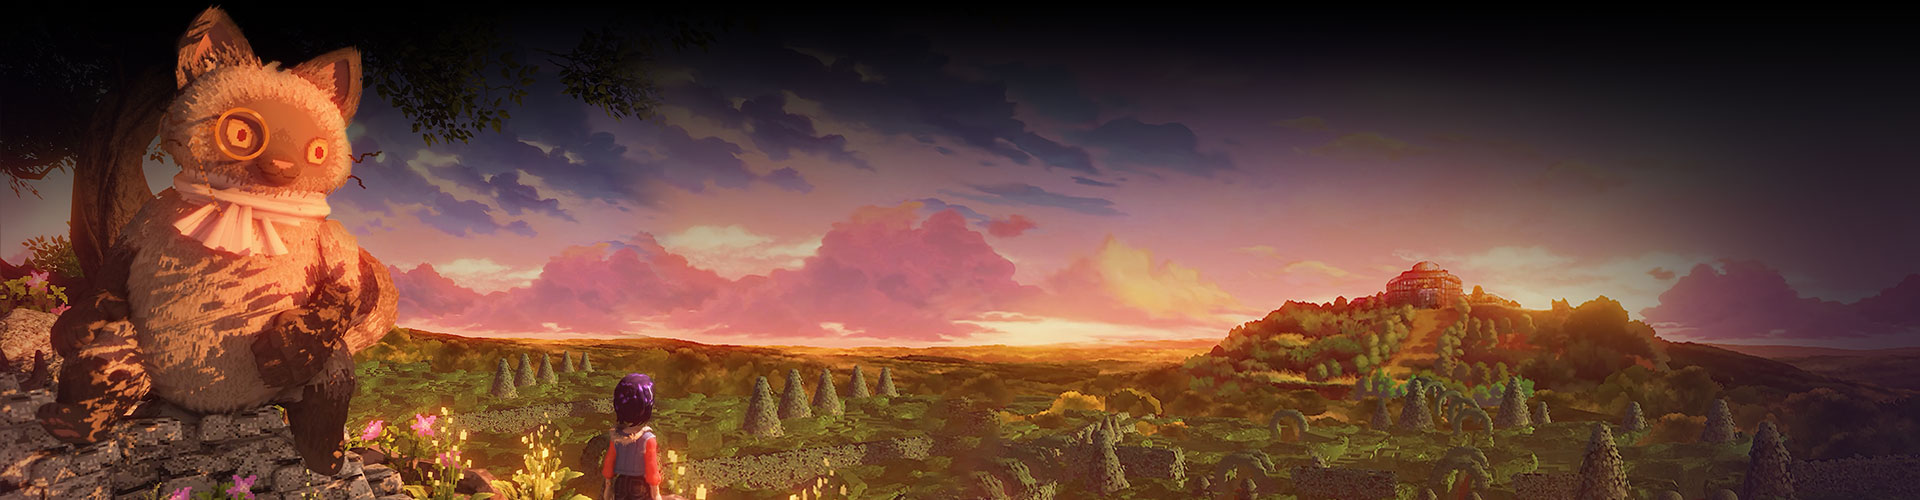 Ravenlok regardant en direction d’un édifice de l’autre côté d’une vallée avec un gros chat portant un monocle à côté d’elle